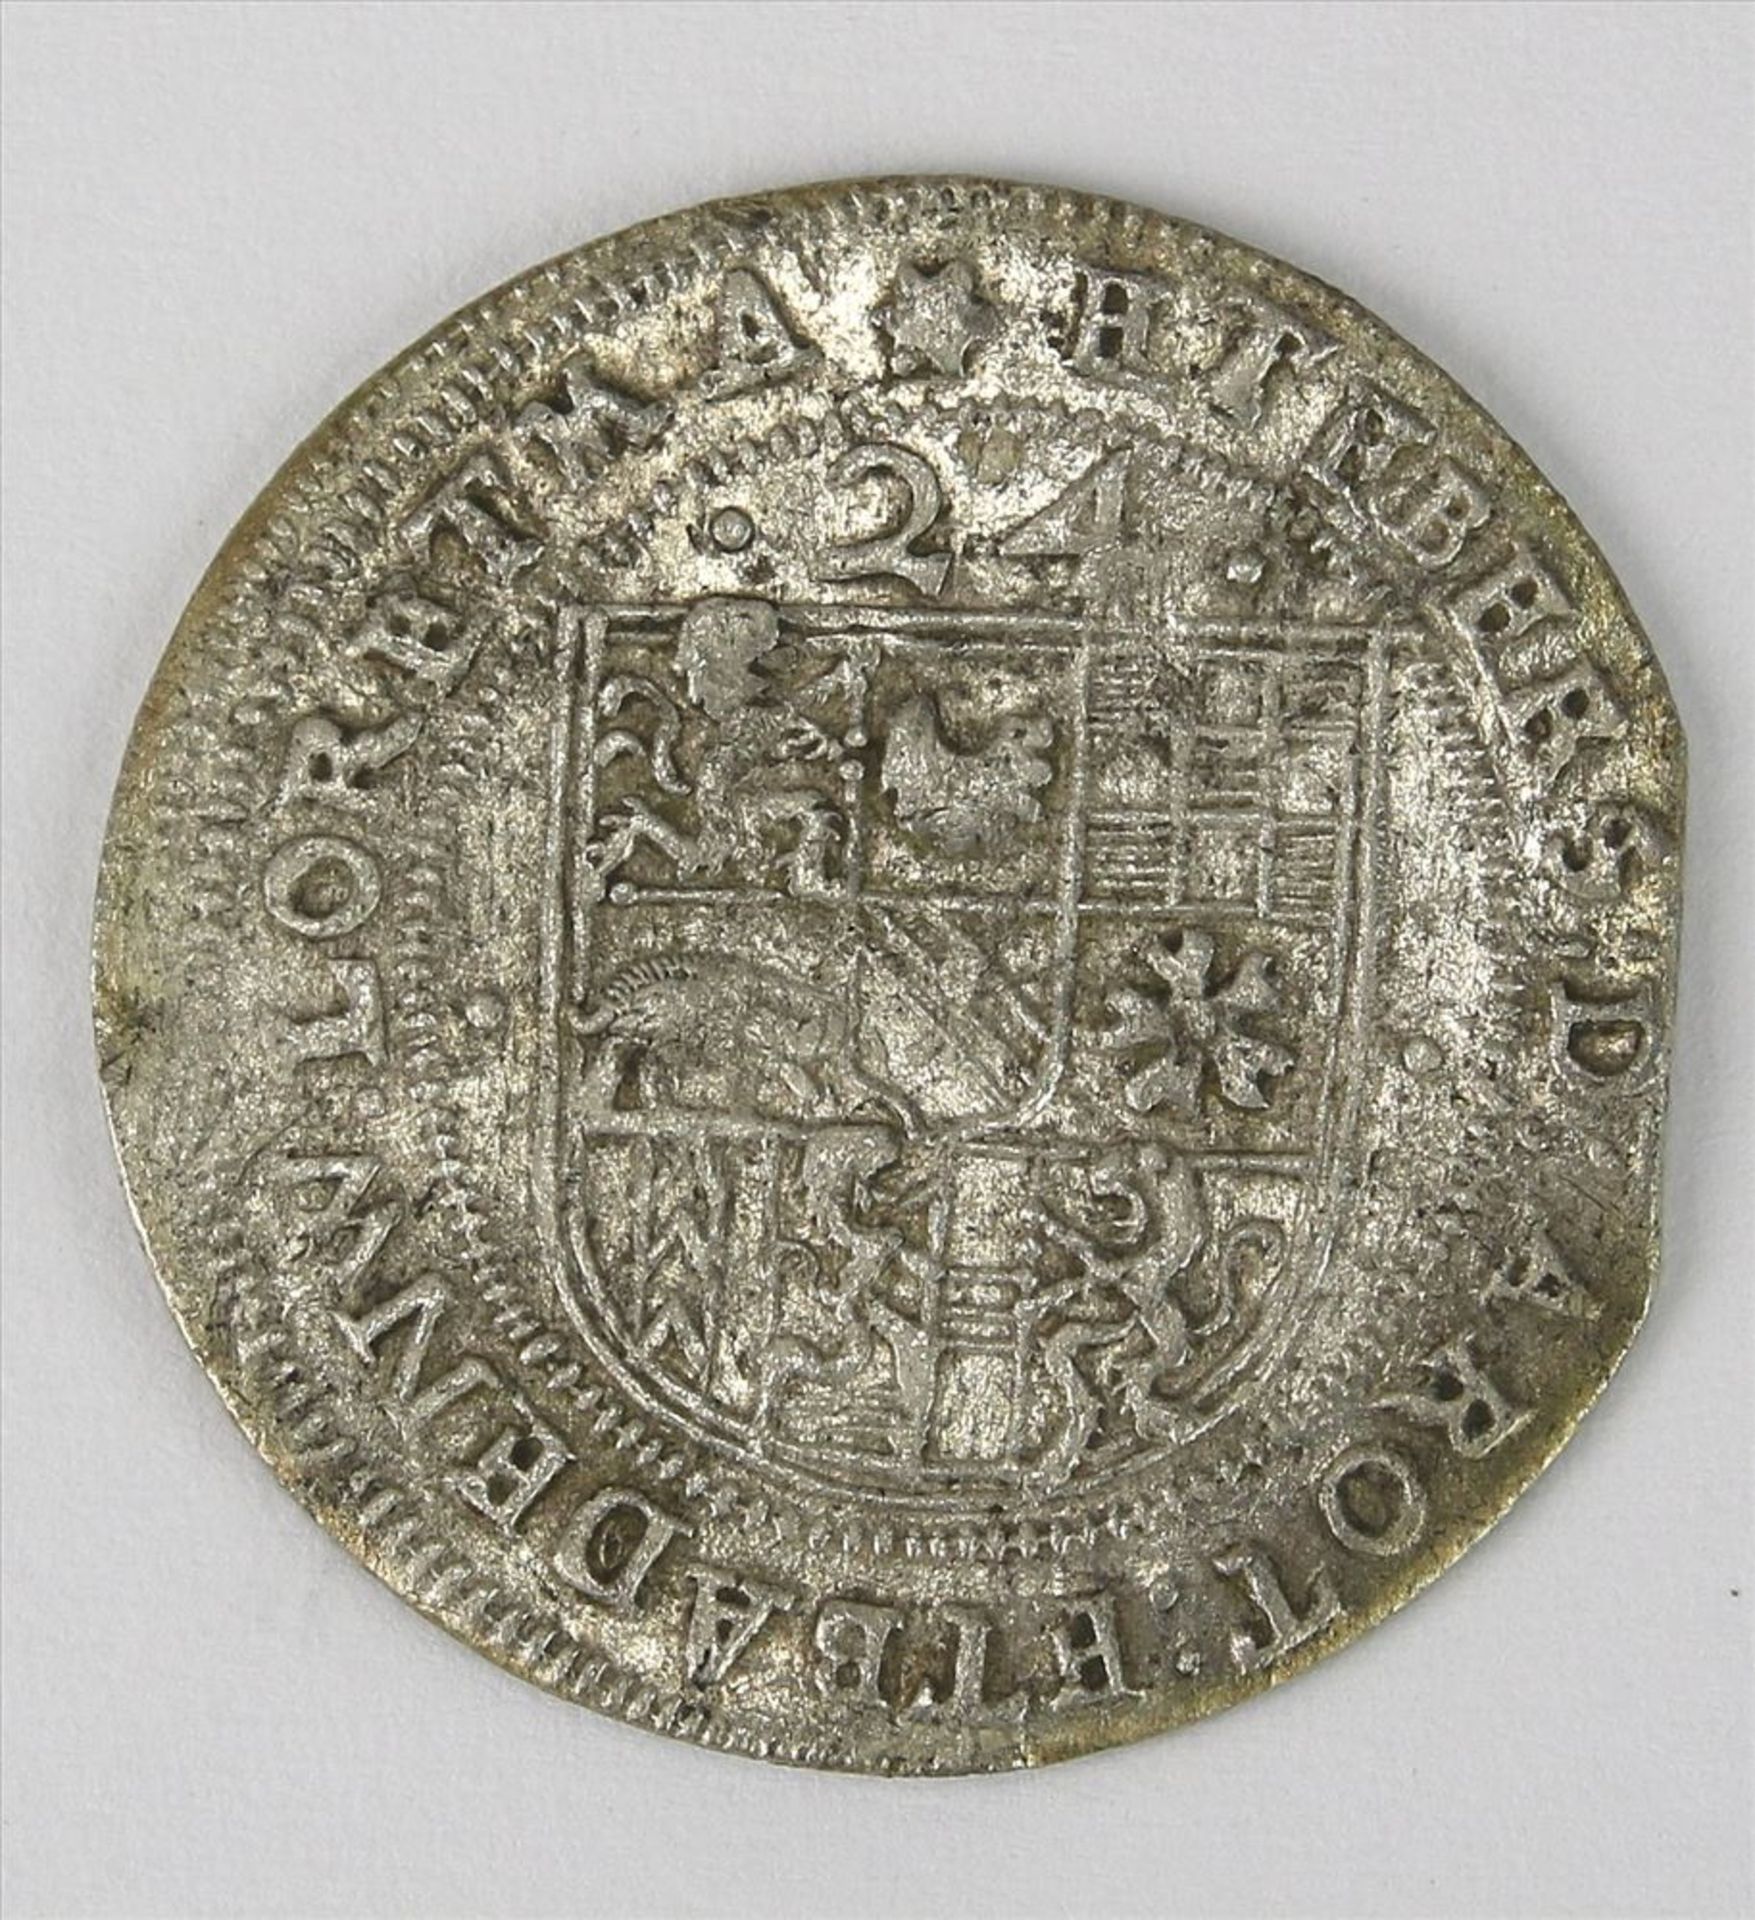 24 Kreuzer Stück Friedrich V, Baden 1622. Durchmesser ca. 29 - 29,6 mm, Gewicht ca. 4,1 Gramm. Für - Bild 2 aus 2